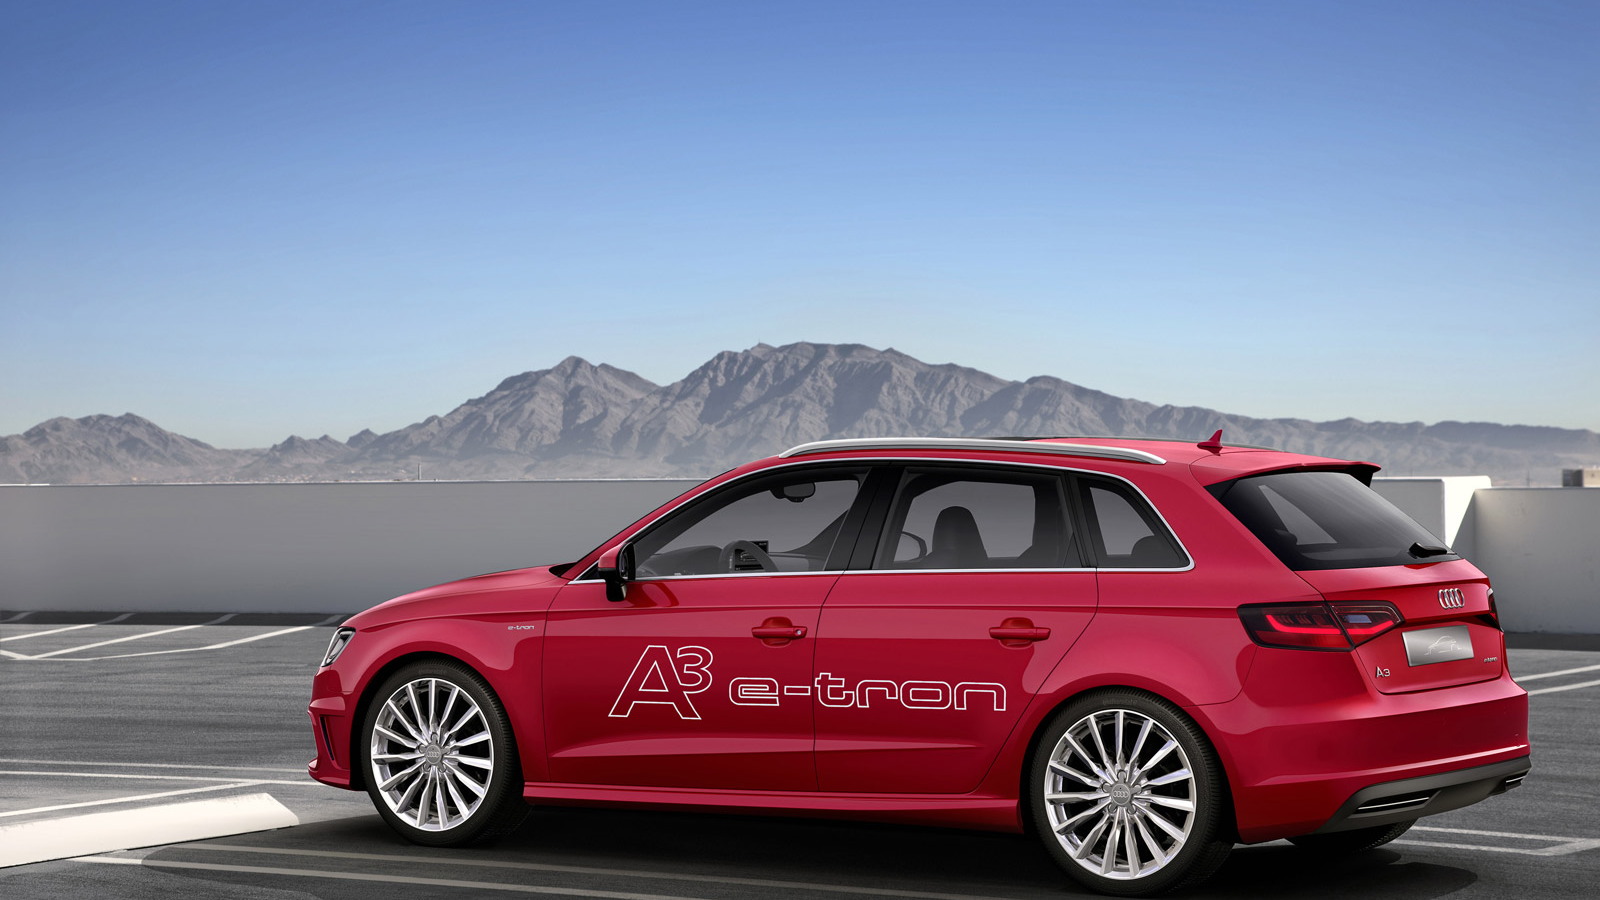 2014 Audi A3 e-tron plug-in hybrid